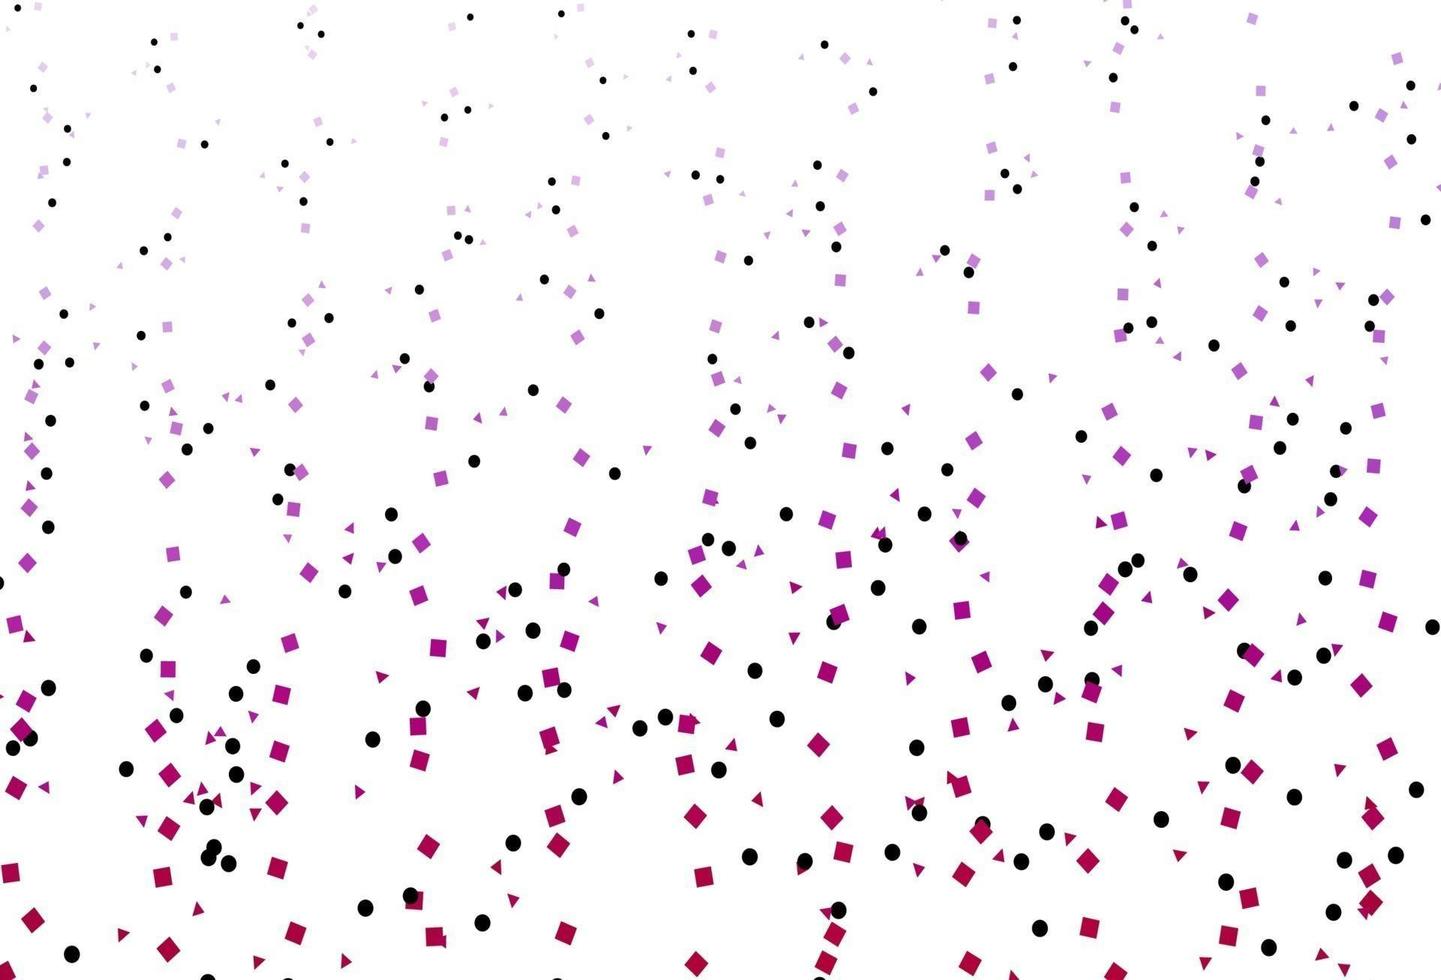 fond de vecteur violet clair avec des triangles, des cercles, des cubes.